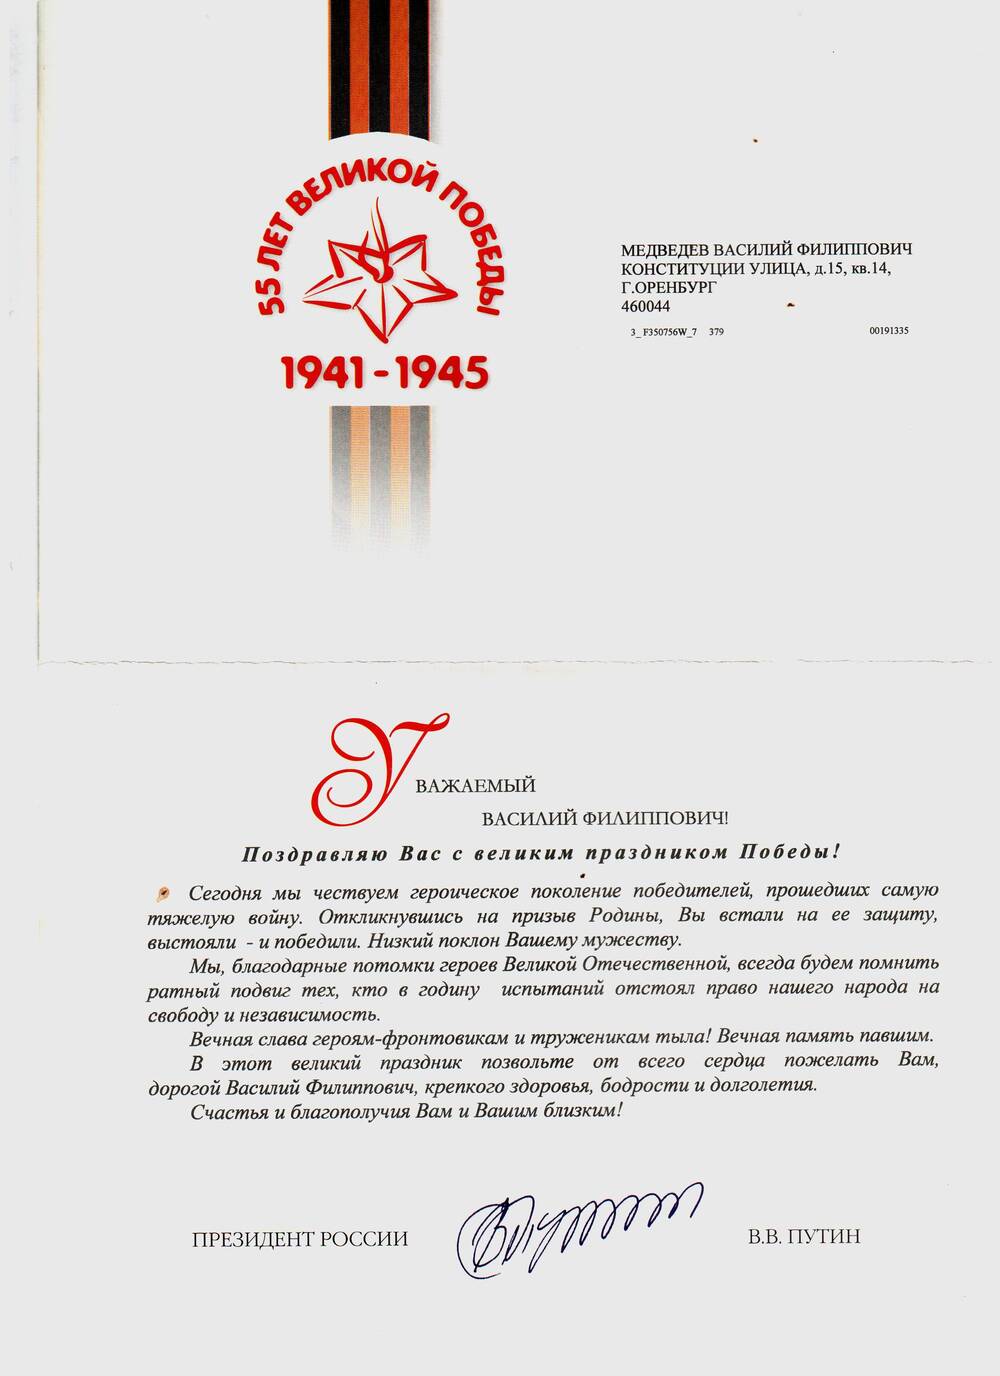 Поздравление Медведева Василия Филипповича с 55-летием Победы.